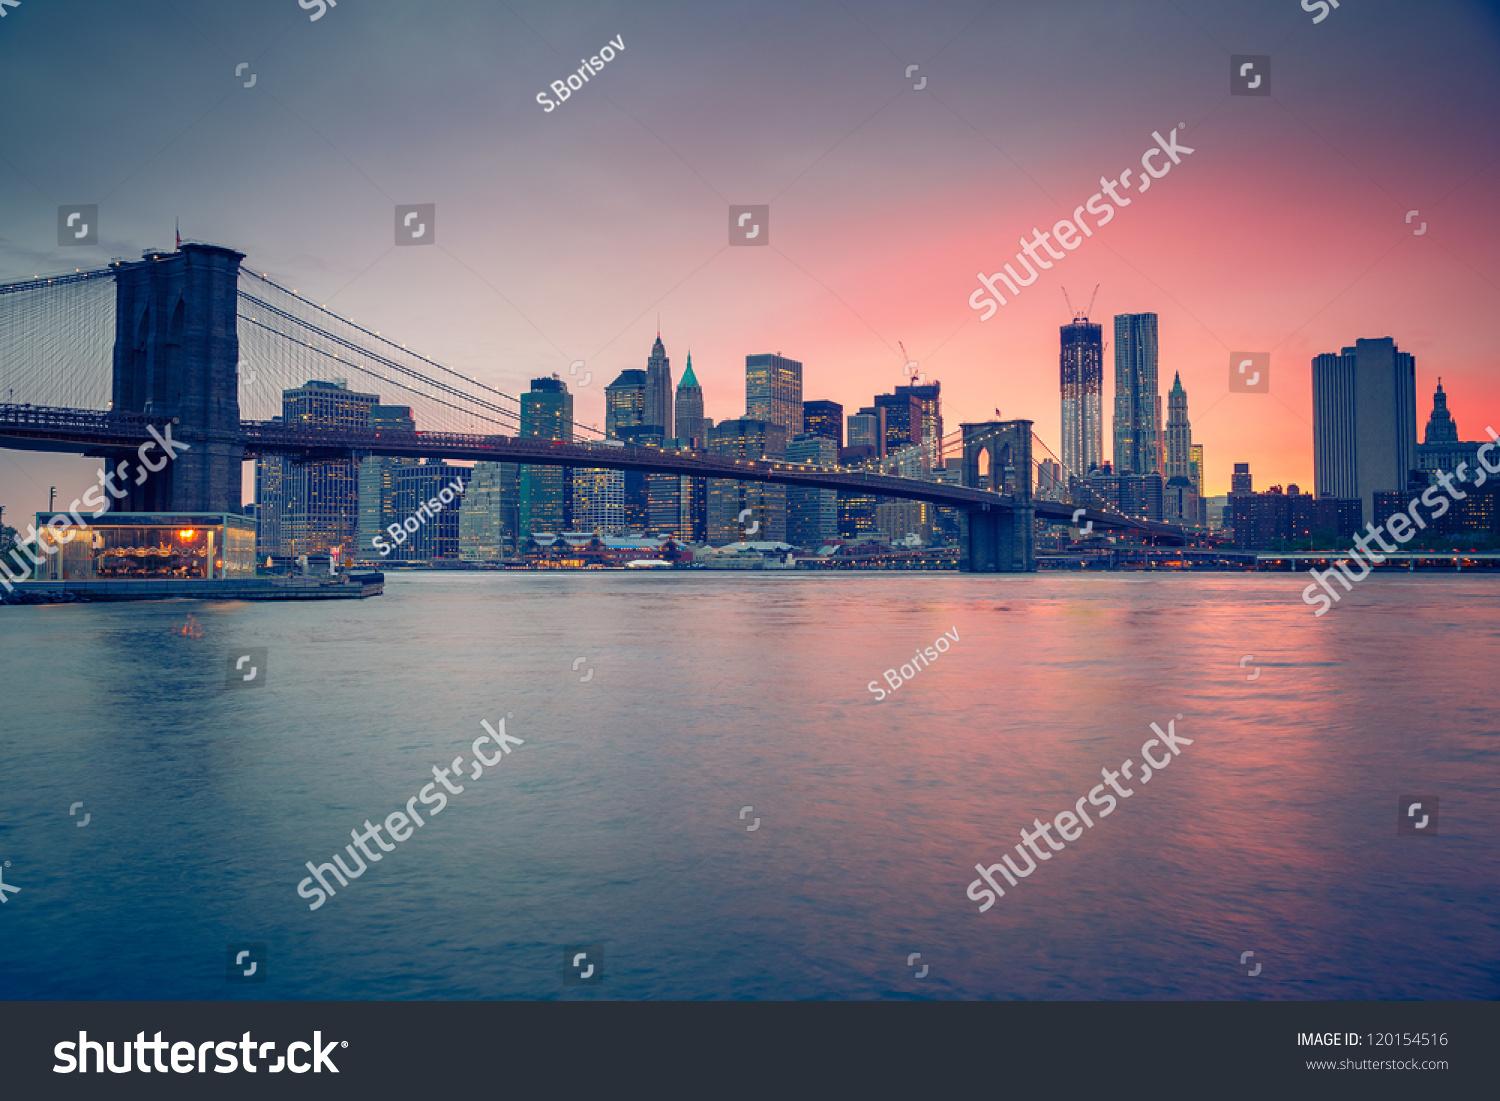 Brooklyn bridge at dusk, New York City #120154516